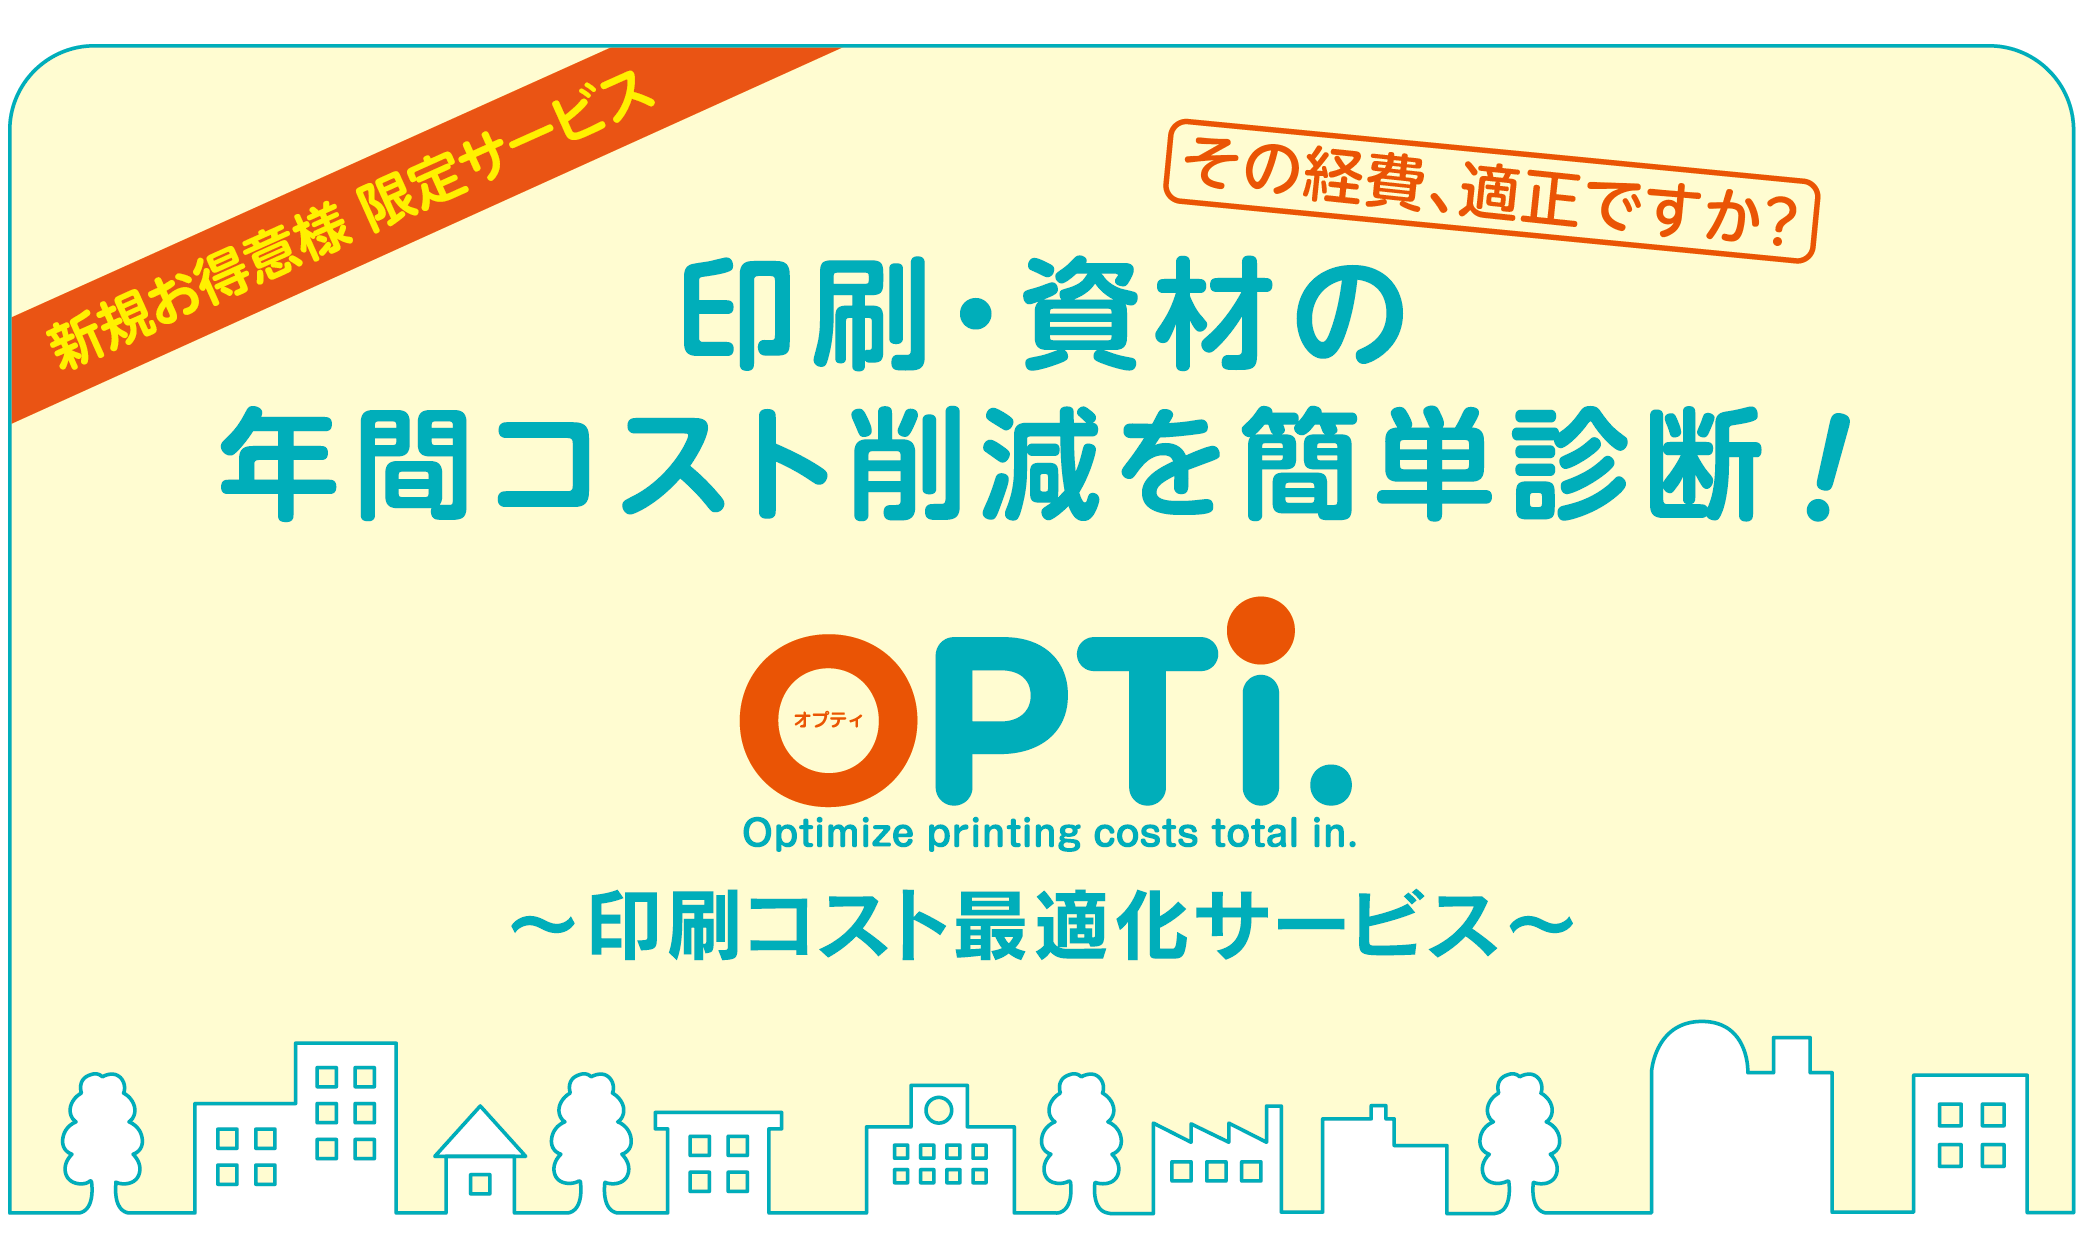 あなたの会社の埋もれた財産をさがします!OPTi〜印刷コスト最適化サービス〜